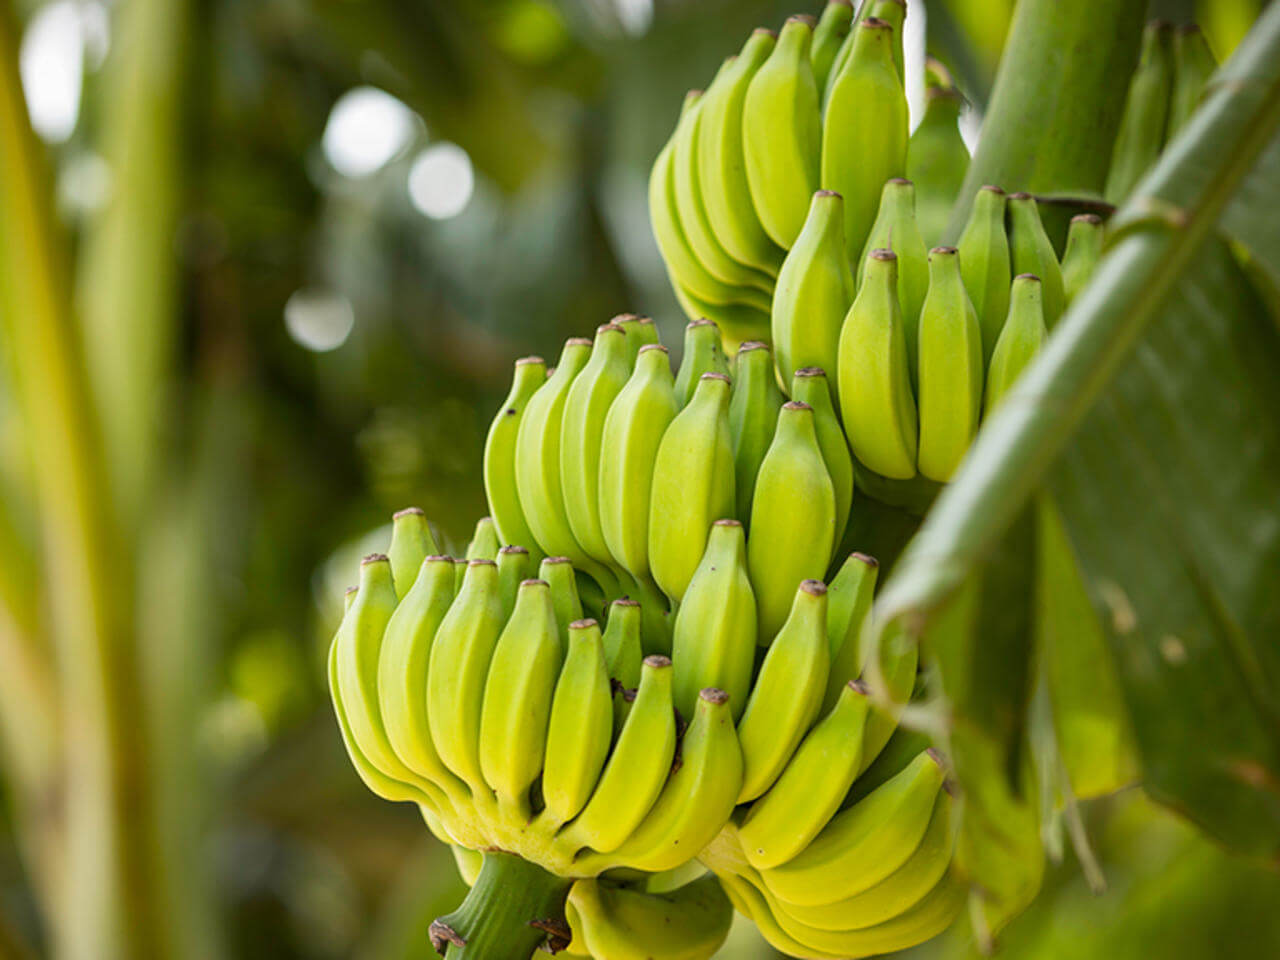 proveedores de banano congelado en Costa Rica